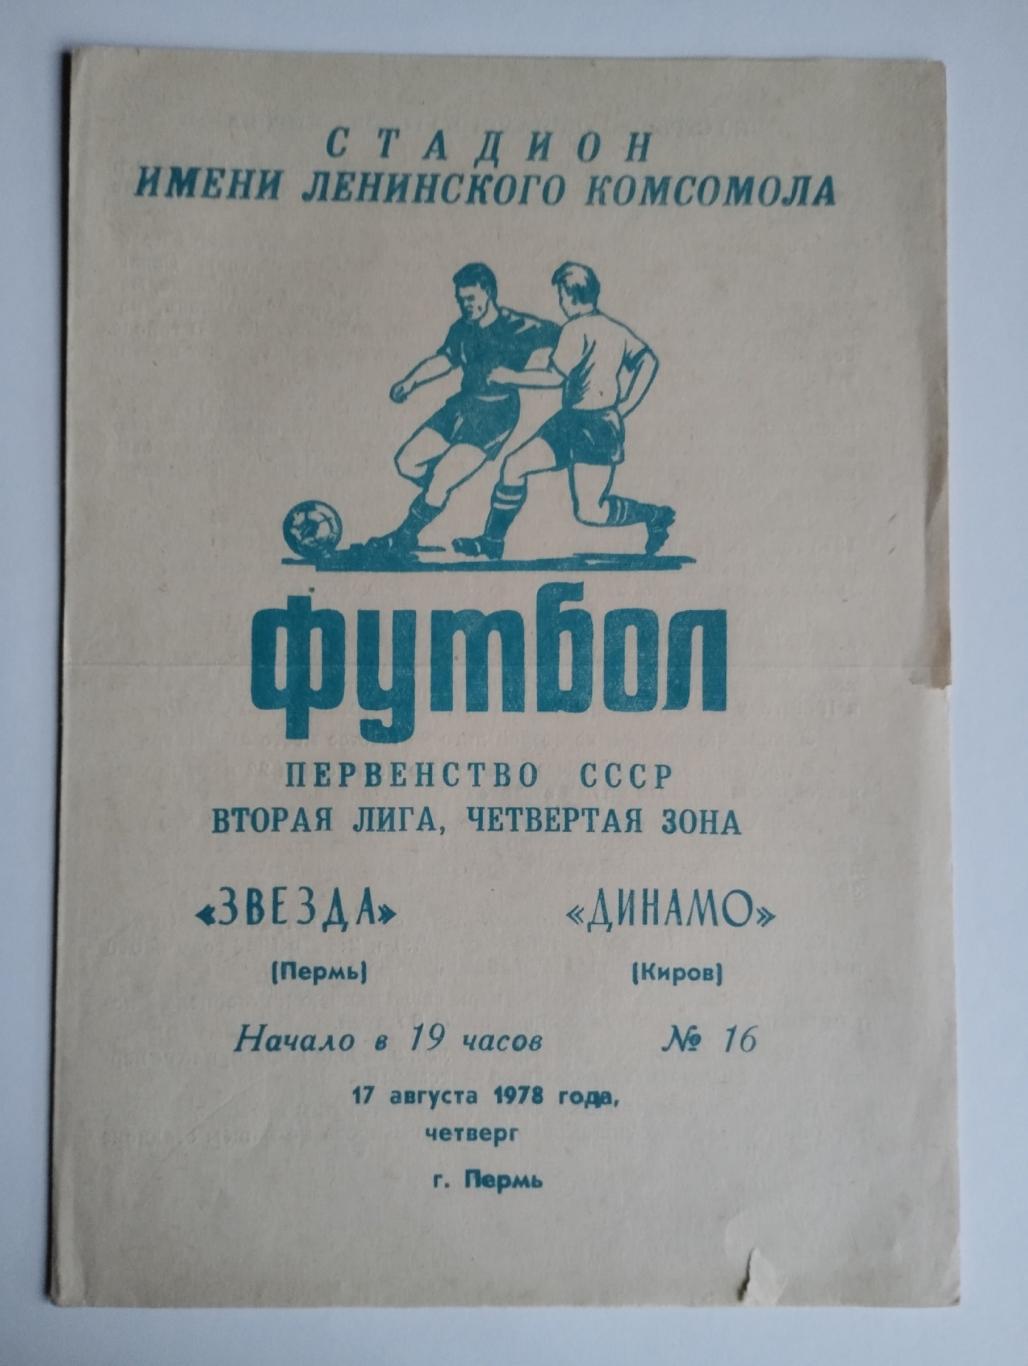 Звезда Пермь - Динамо Киров, 17.08.1978